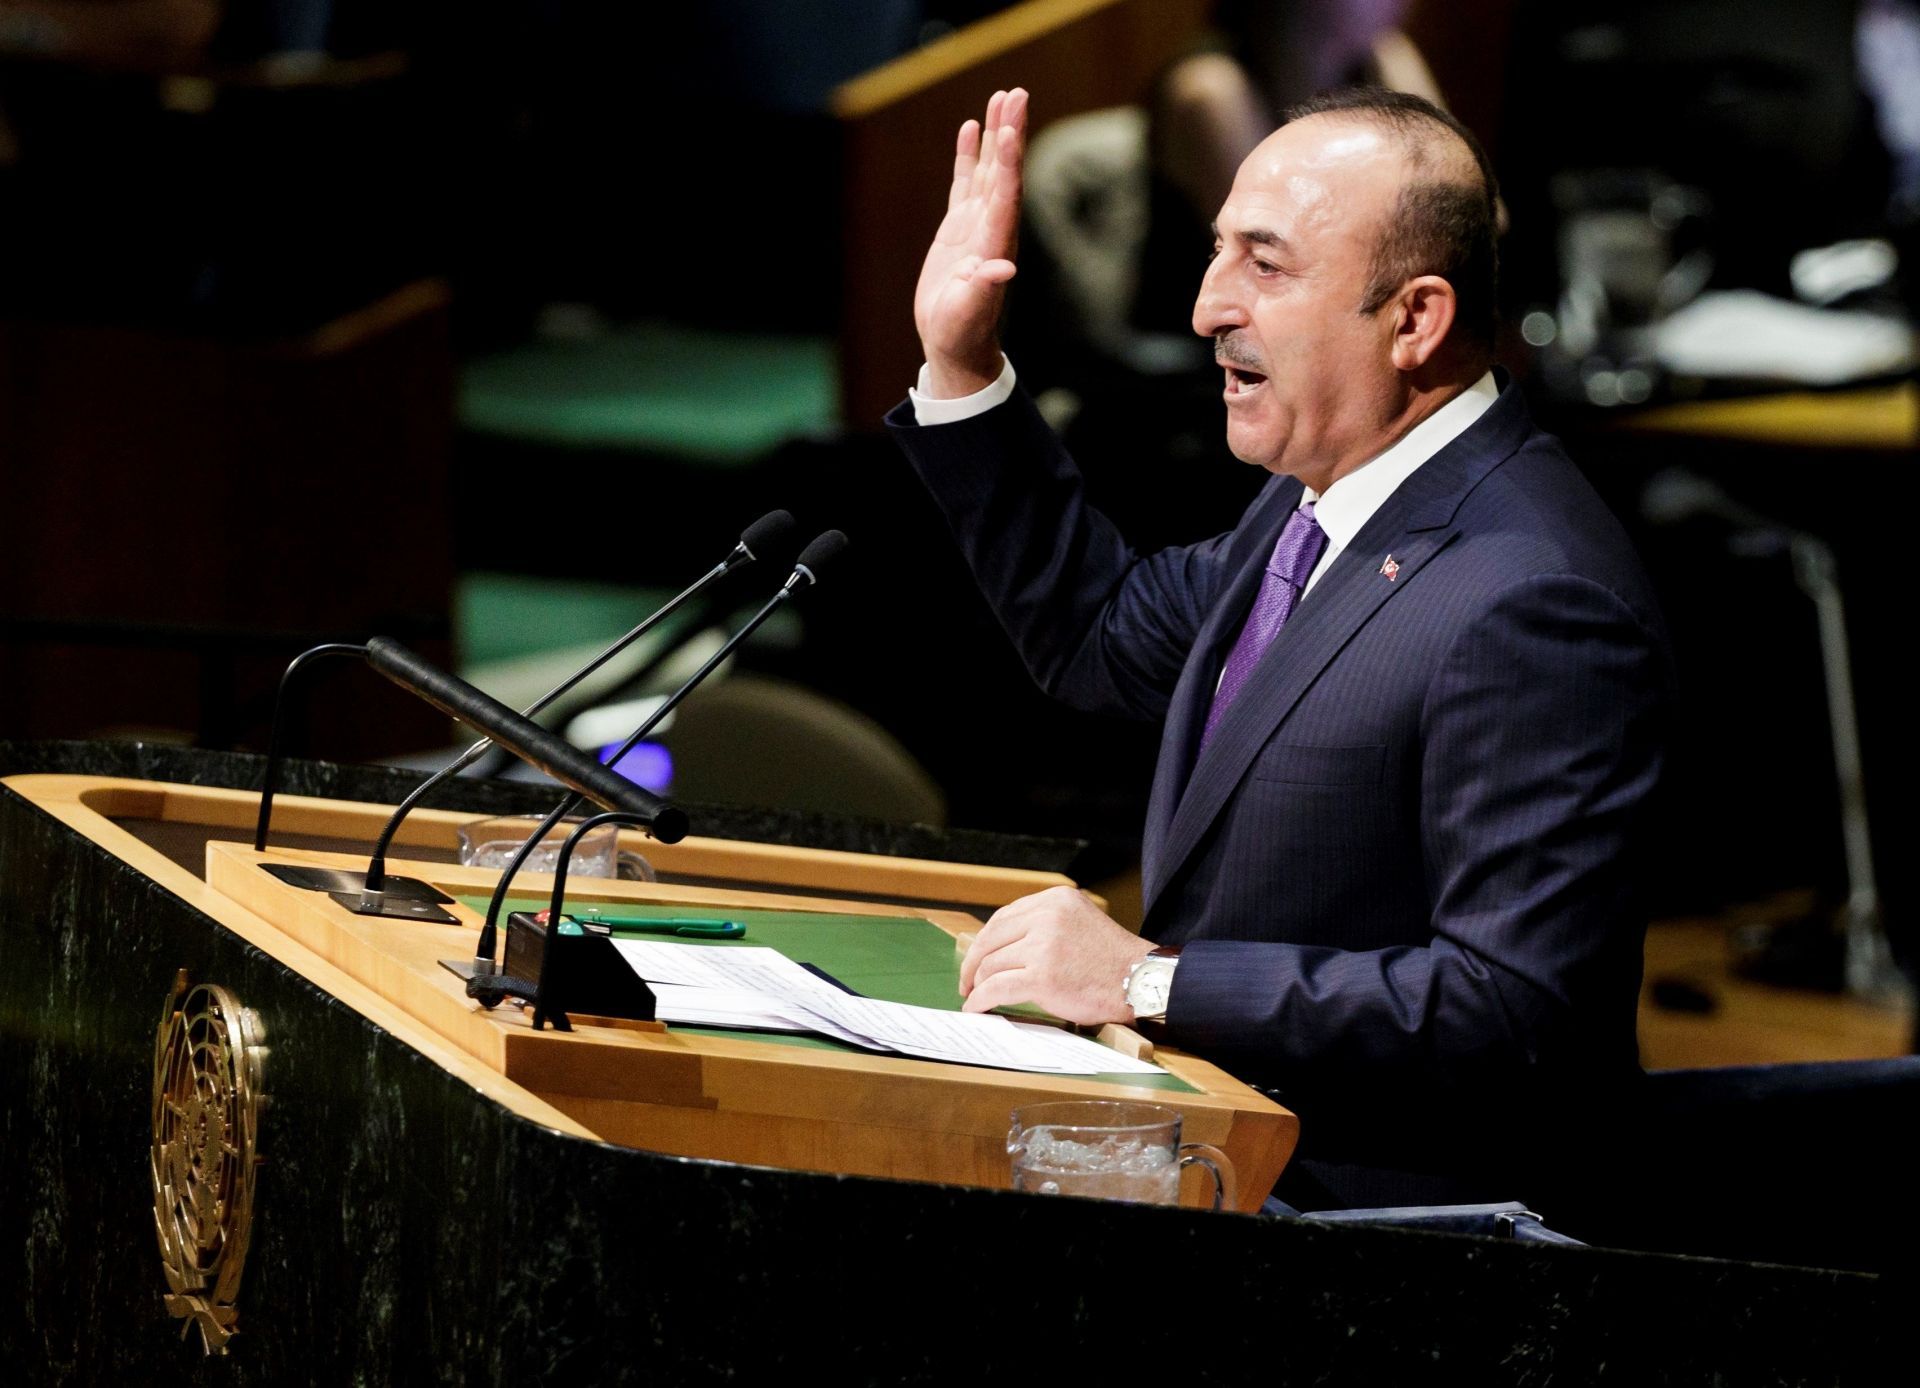 El ministro de Exteriores turco, Mevlut Cavusoglu, interviene antes la votación de una resolución crítica en la Asamblea General de la ONU, en la sede de las Naciones Unidas en Nueva York (Estados Unidos)